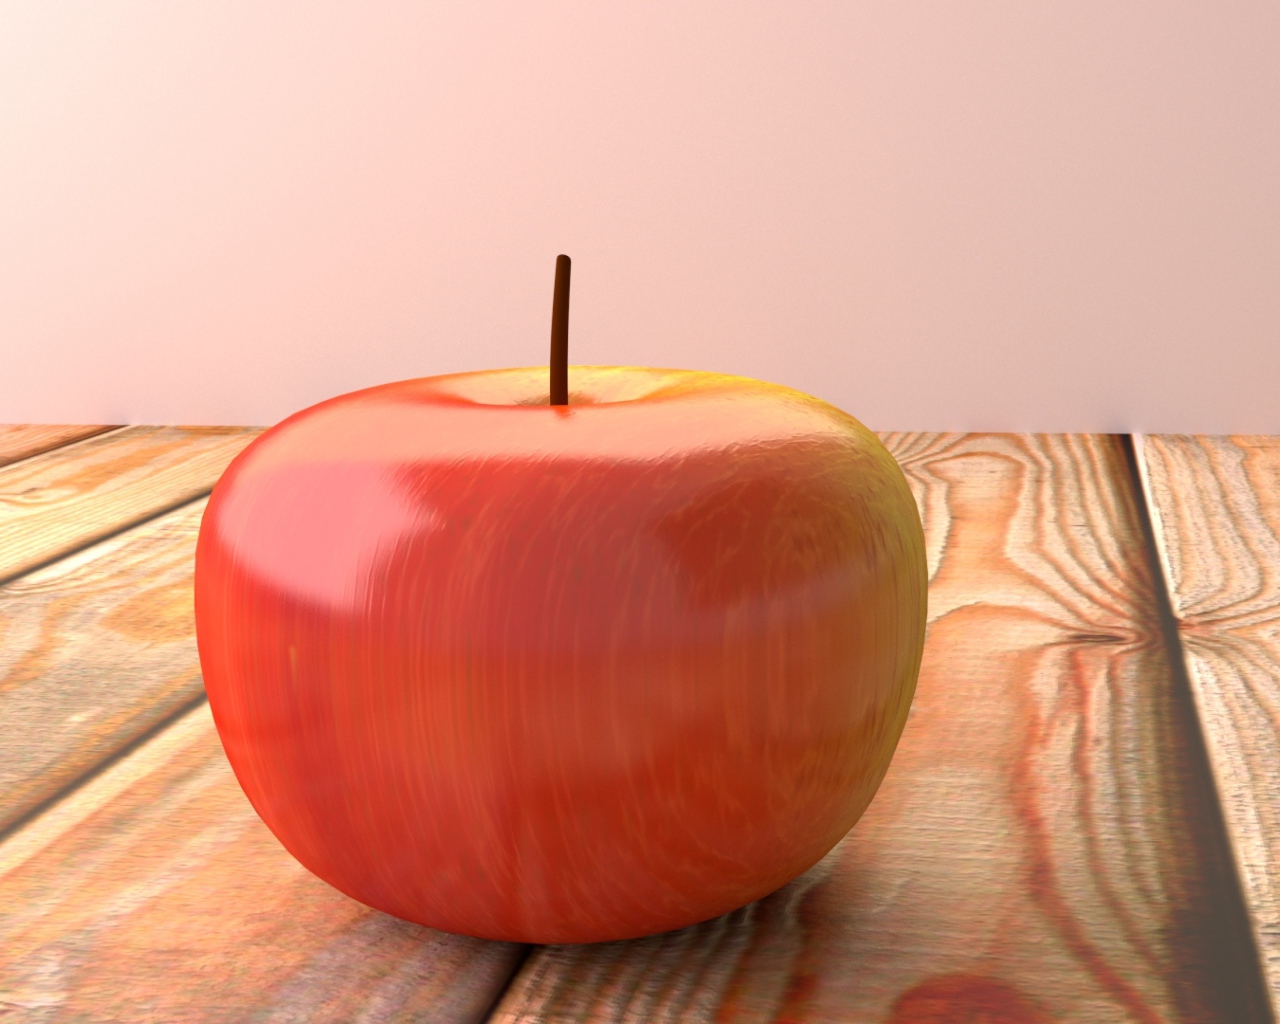 Красное 3д яблоко на деревянном столе 